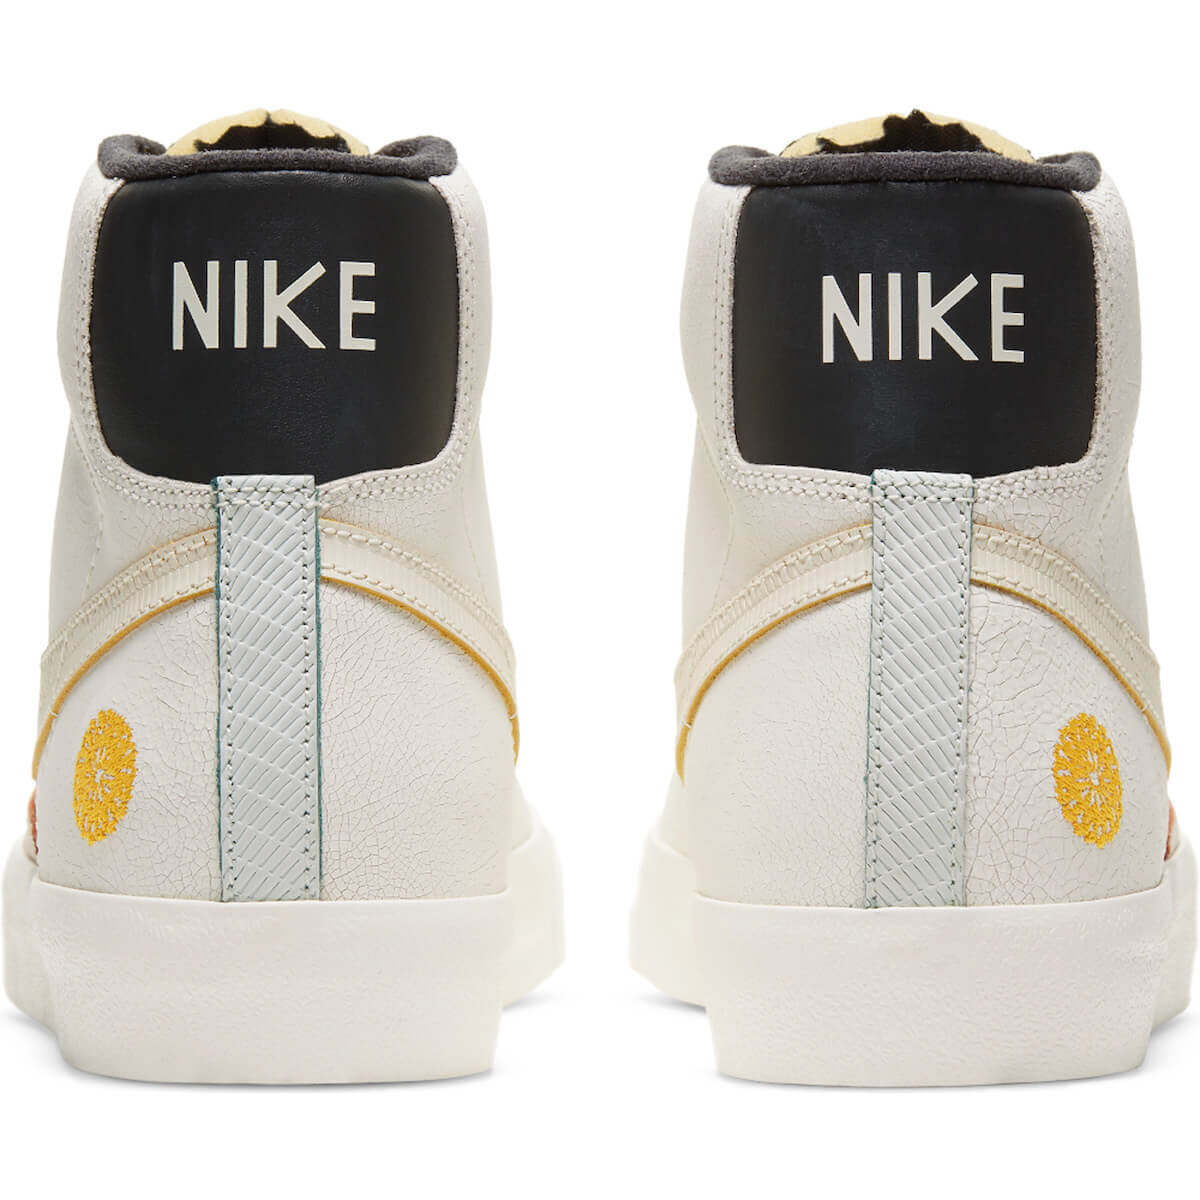 CNK-Nike-Dia-De-Los-Muertos-Collection-Blazer-Mid-Back.jpg